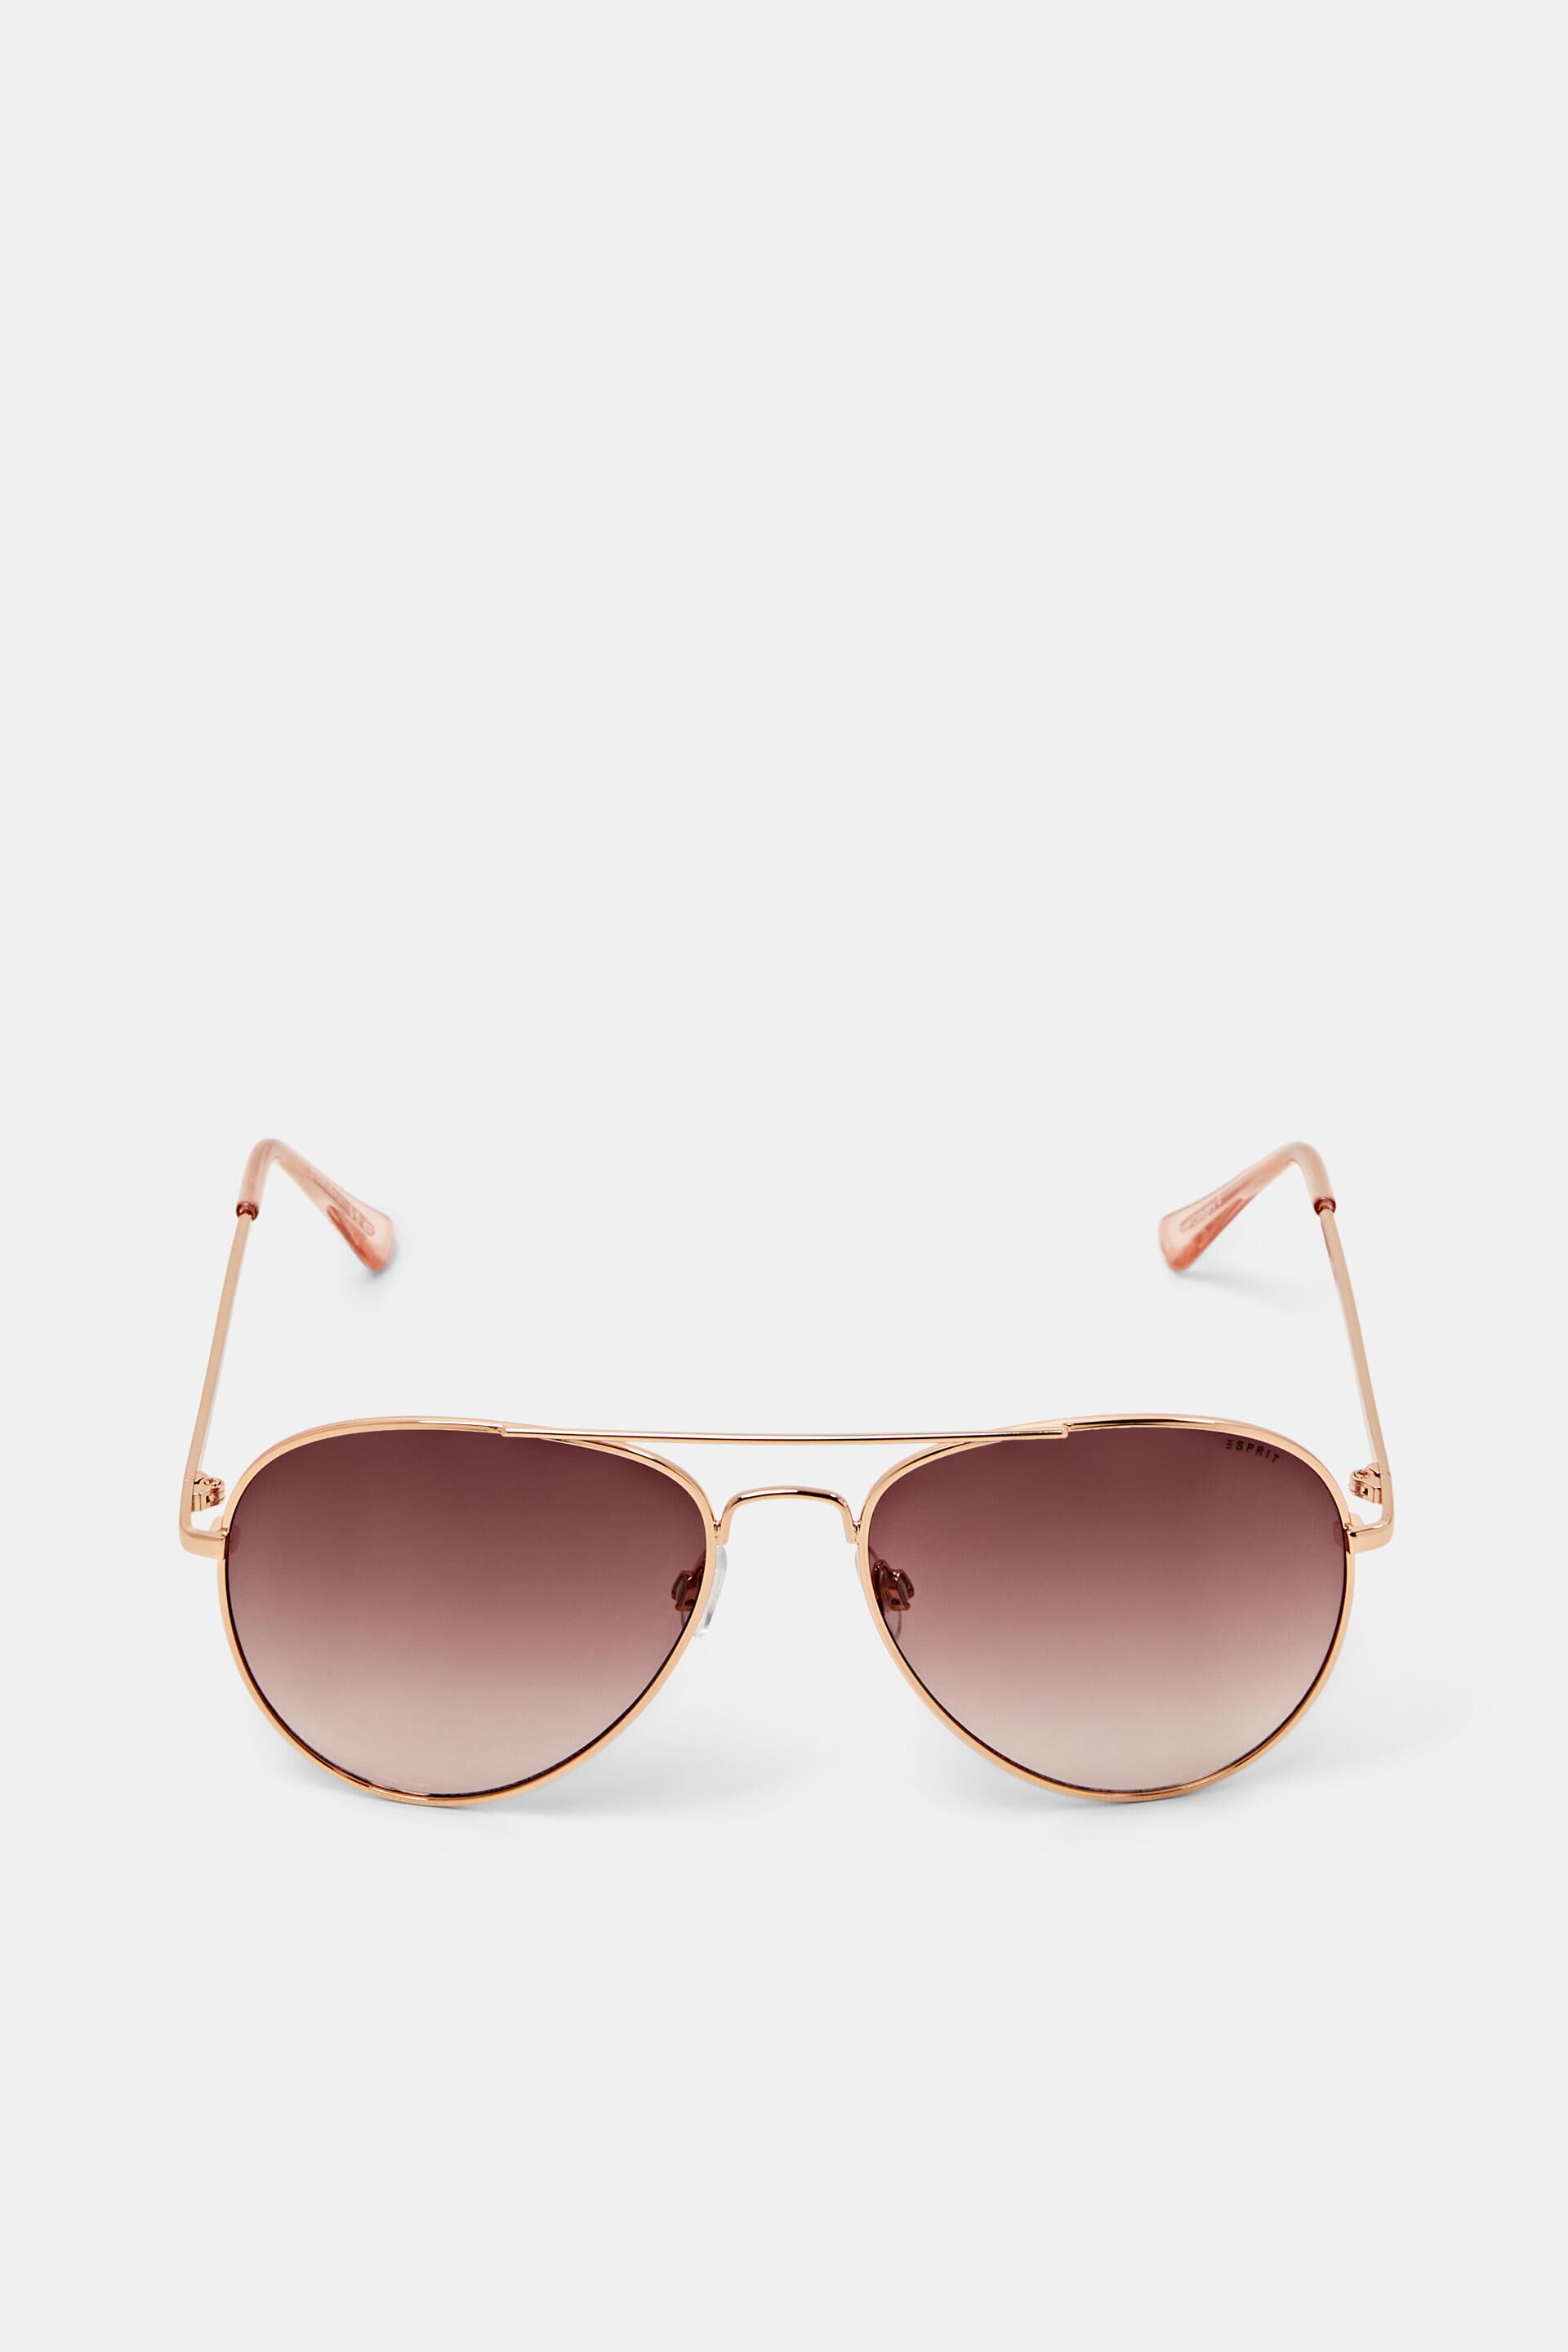 Esprit rose lenses with sunglasses Unisex tinted aviator